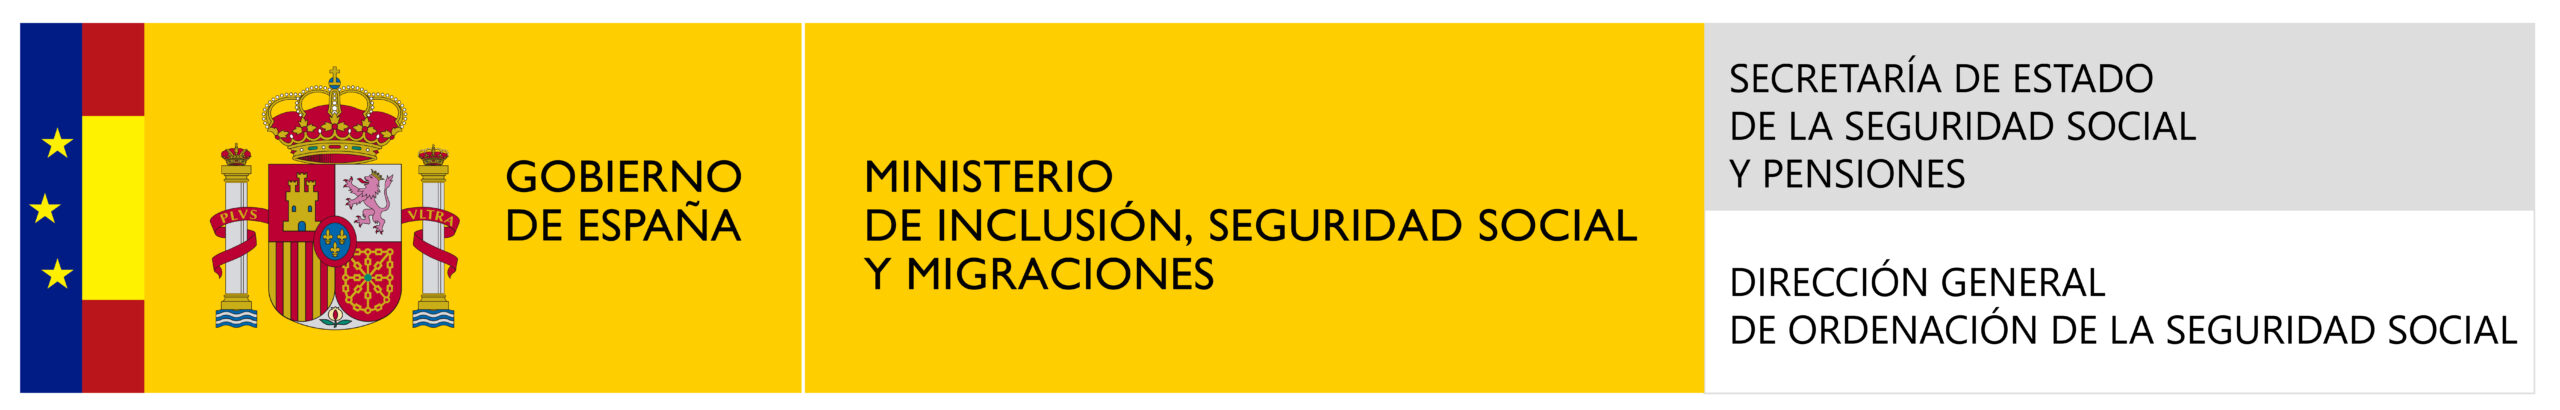 Logotipo_del_Ministerio_de_Inclusión,_Seguridad_Social_y_Migraciones-01